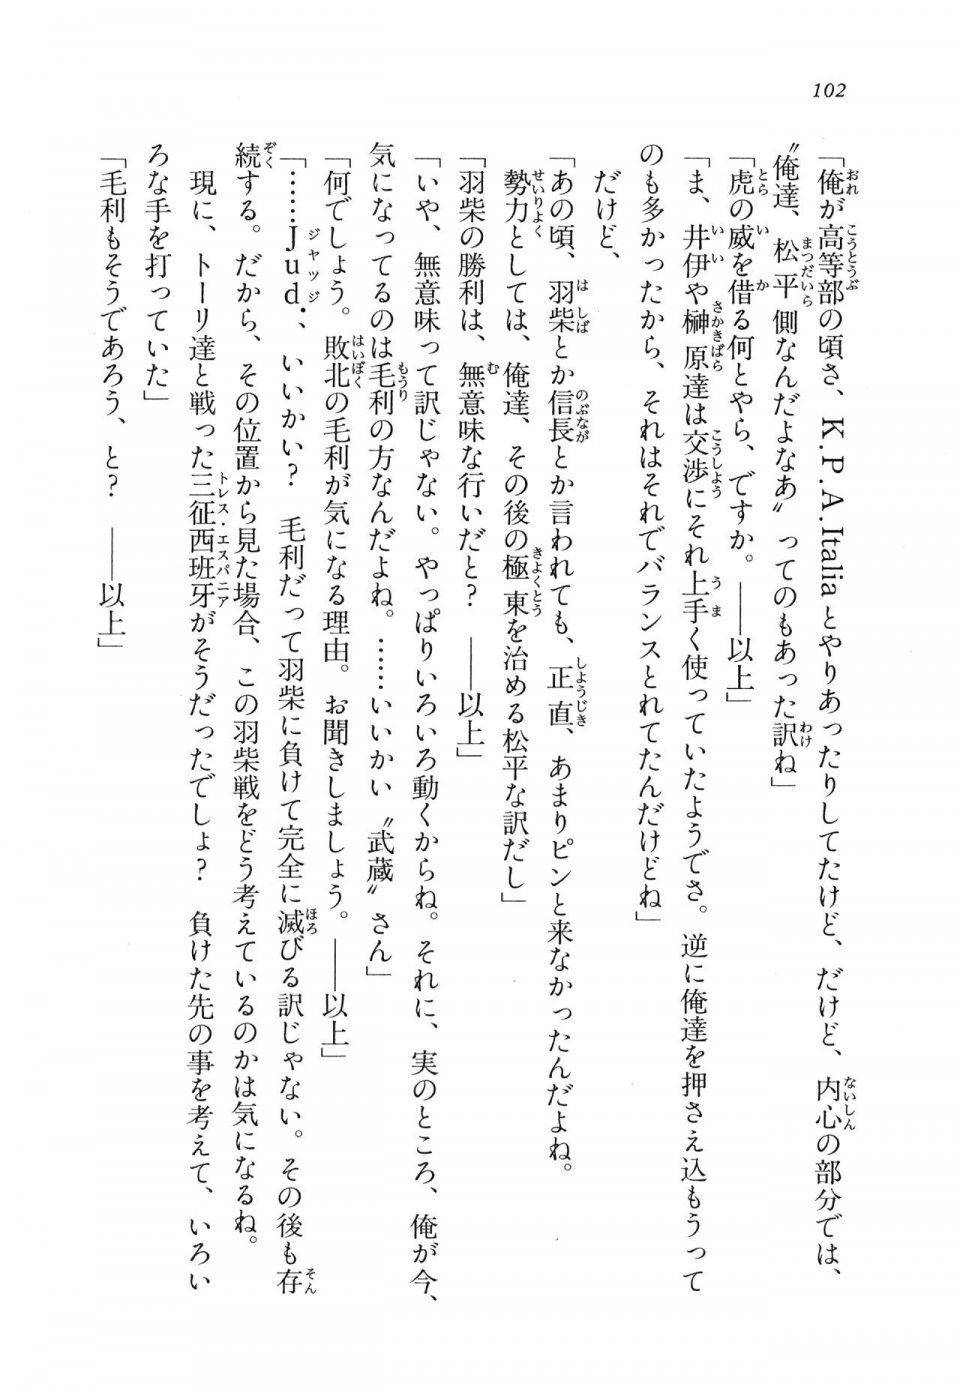 Kyoukai Senjou no Horizon LN Vol 11(5A) - Photo #102